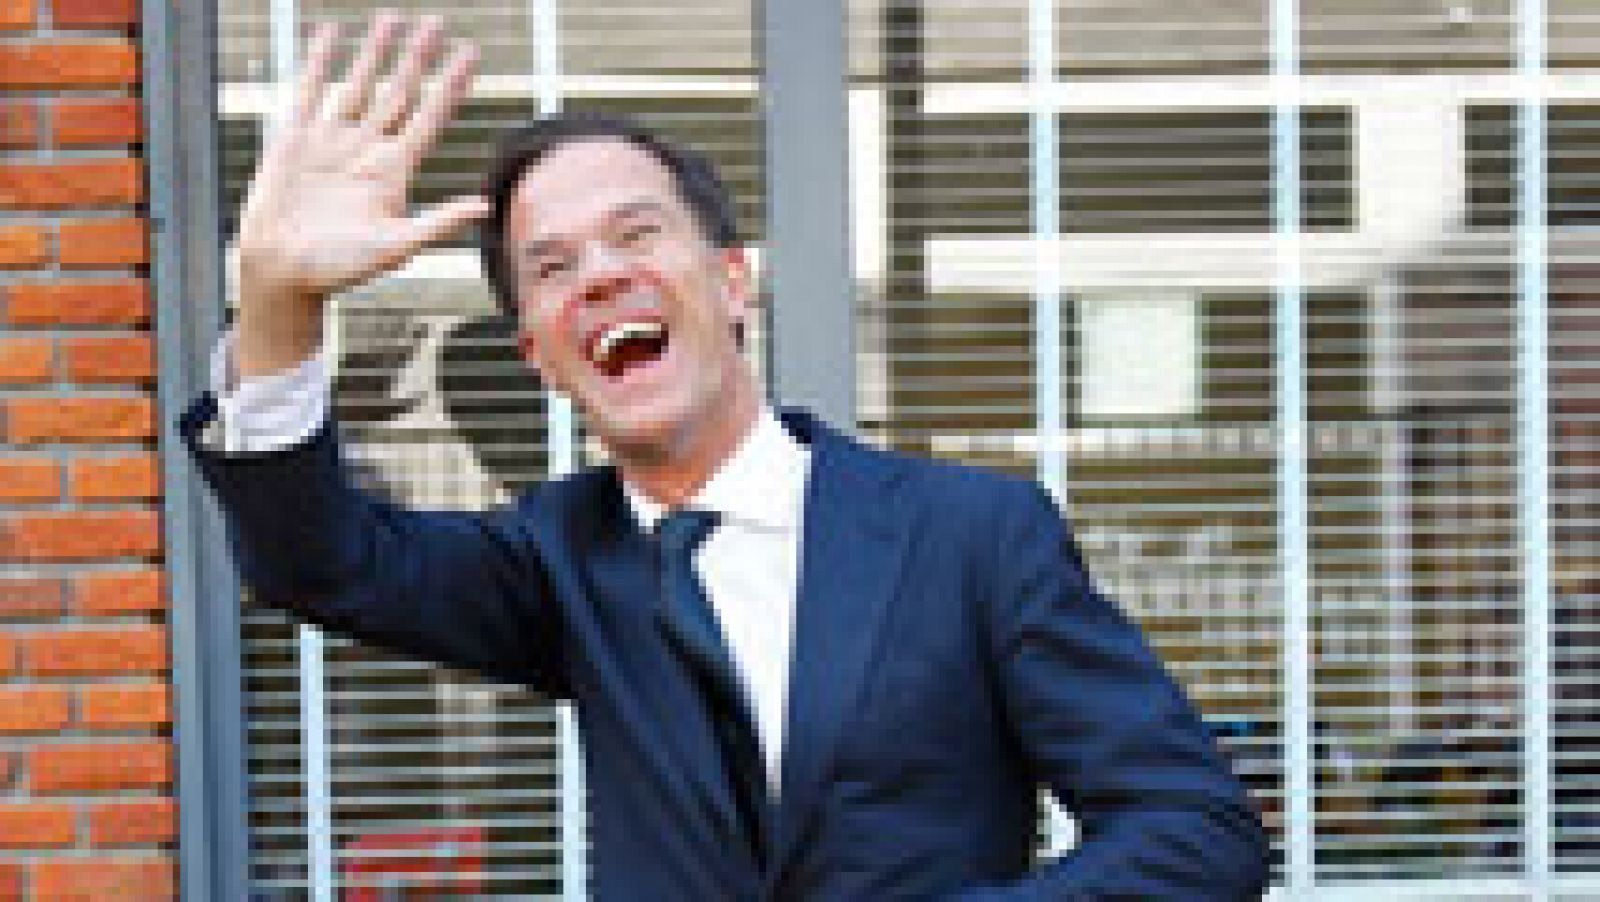 Los sondeos a pie de urna conceden una victoria holgada al conservador Rutte frente al ultraderechista Wilders